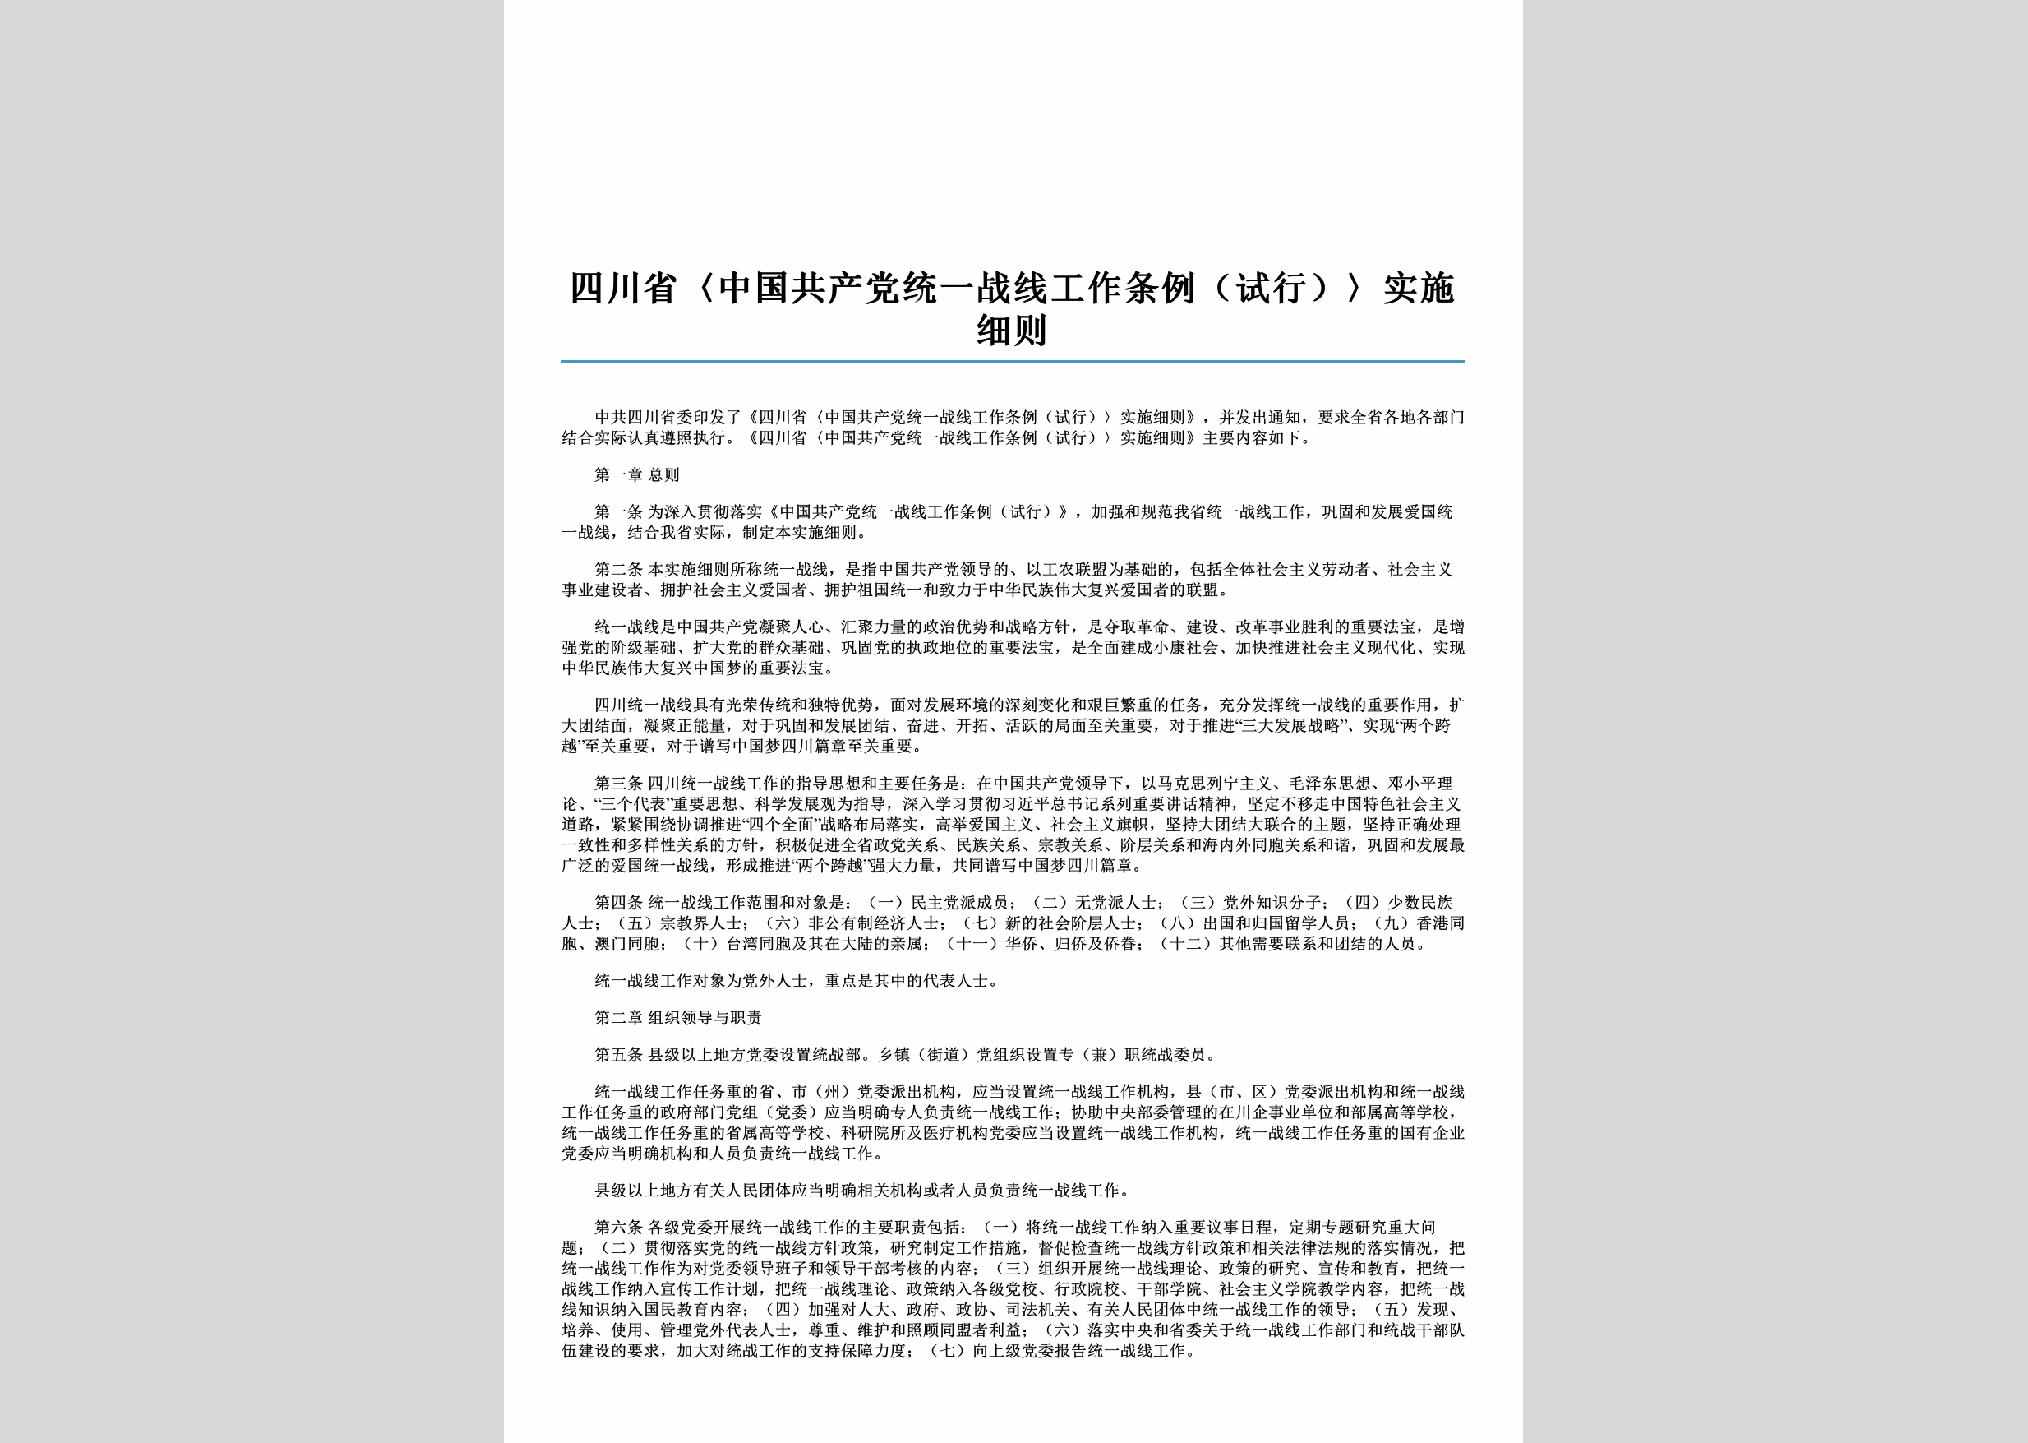 SC-TYZXGZXZ-2015：四川省《中国共产党统一战线工作条例（试行）》实施细则